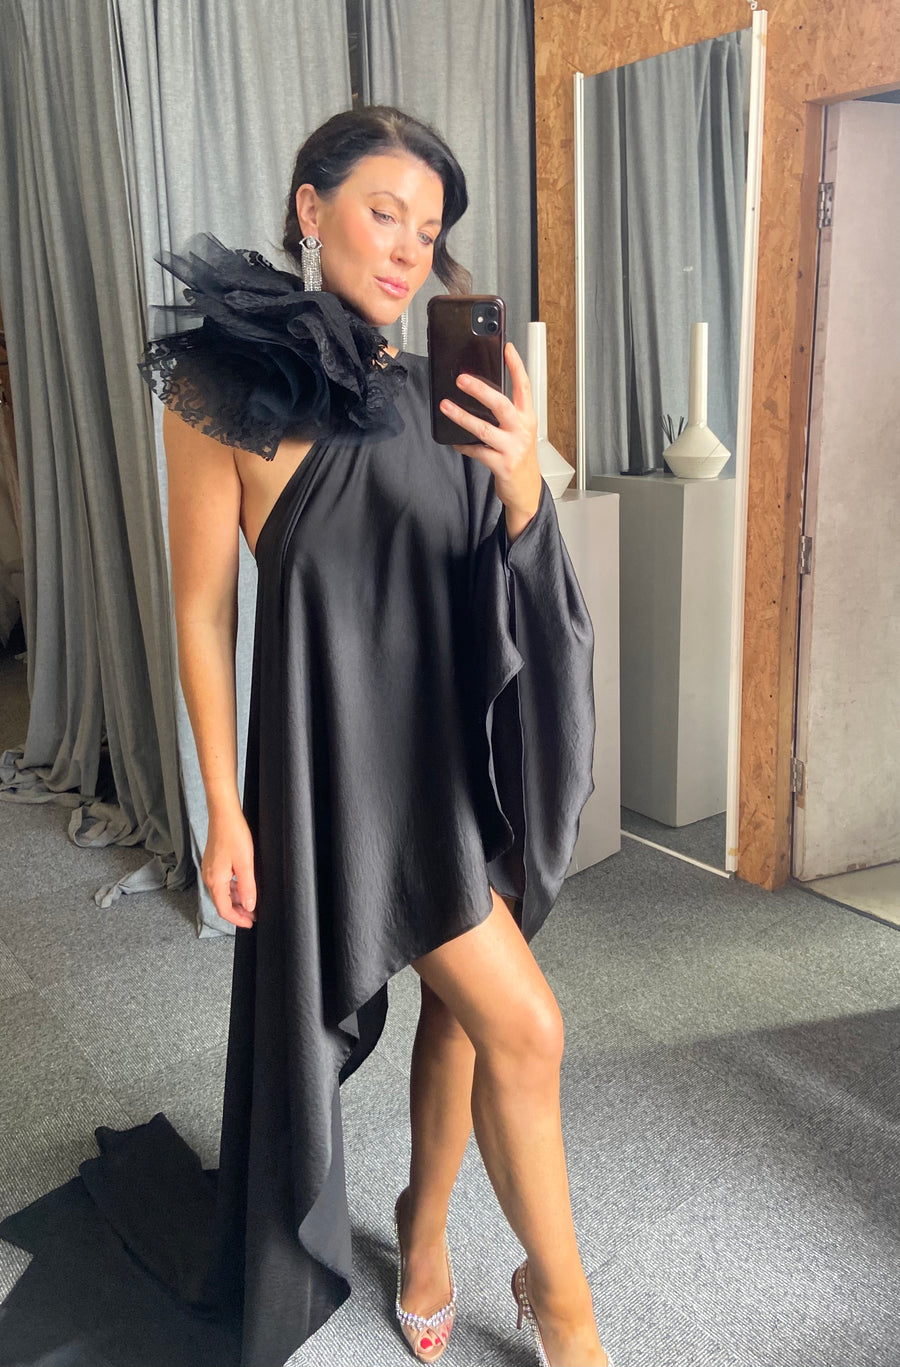 Black Asymmetric Drape Dress